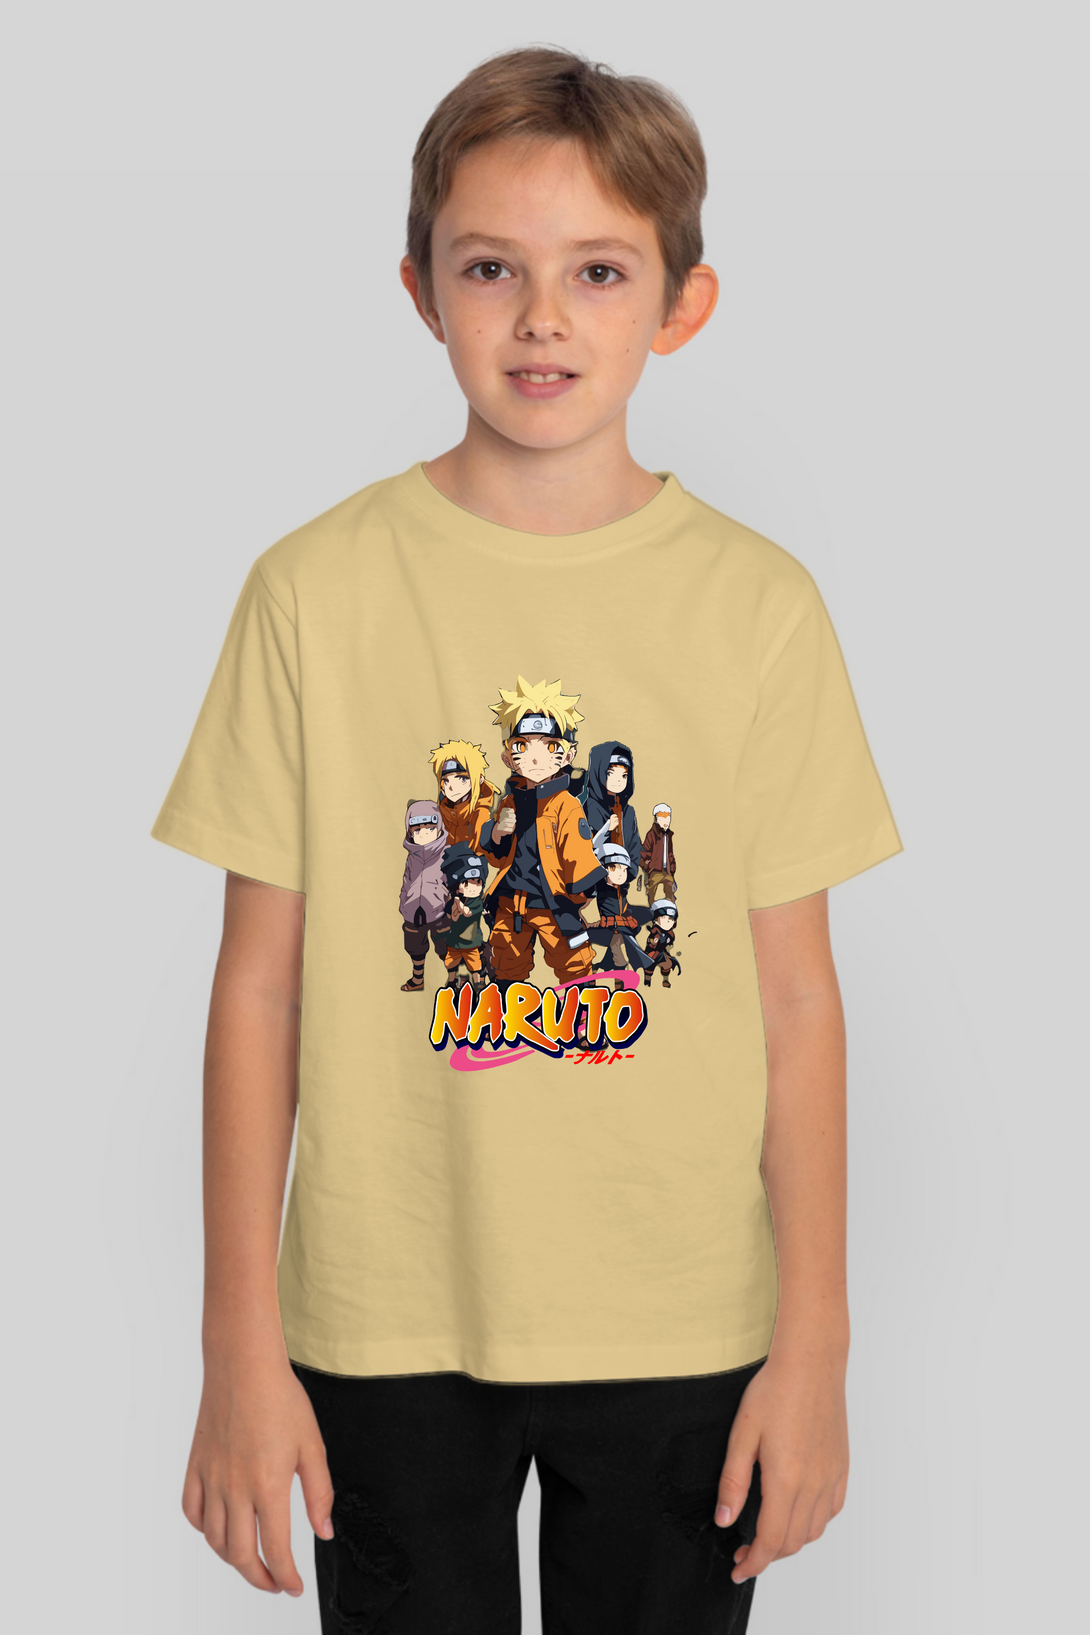 Anime Tiny Naruto Printed T-Shirt For Boy - WowWaves - 9